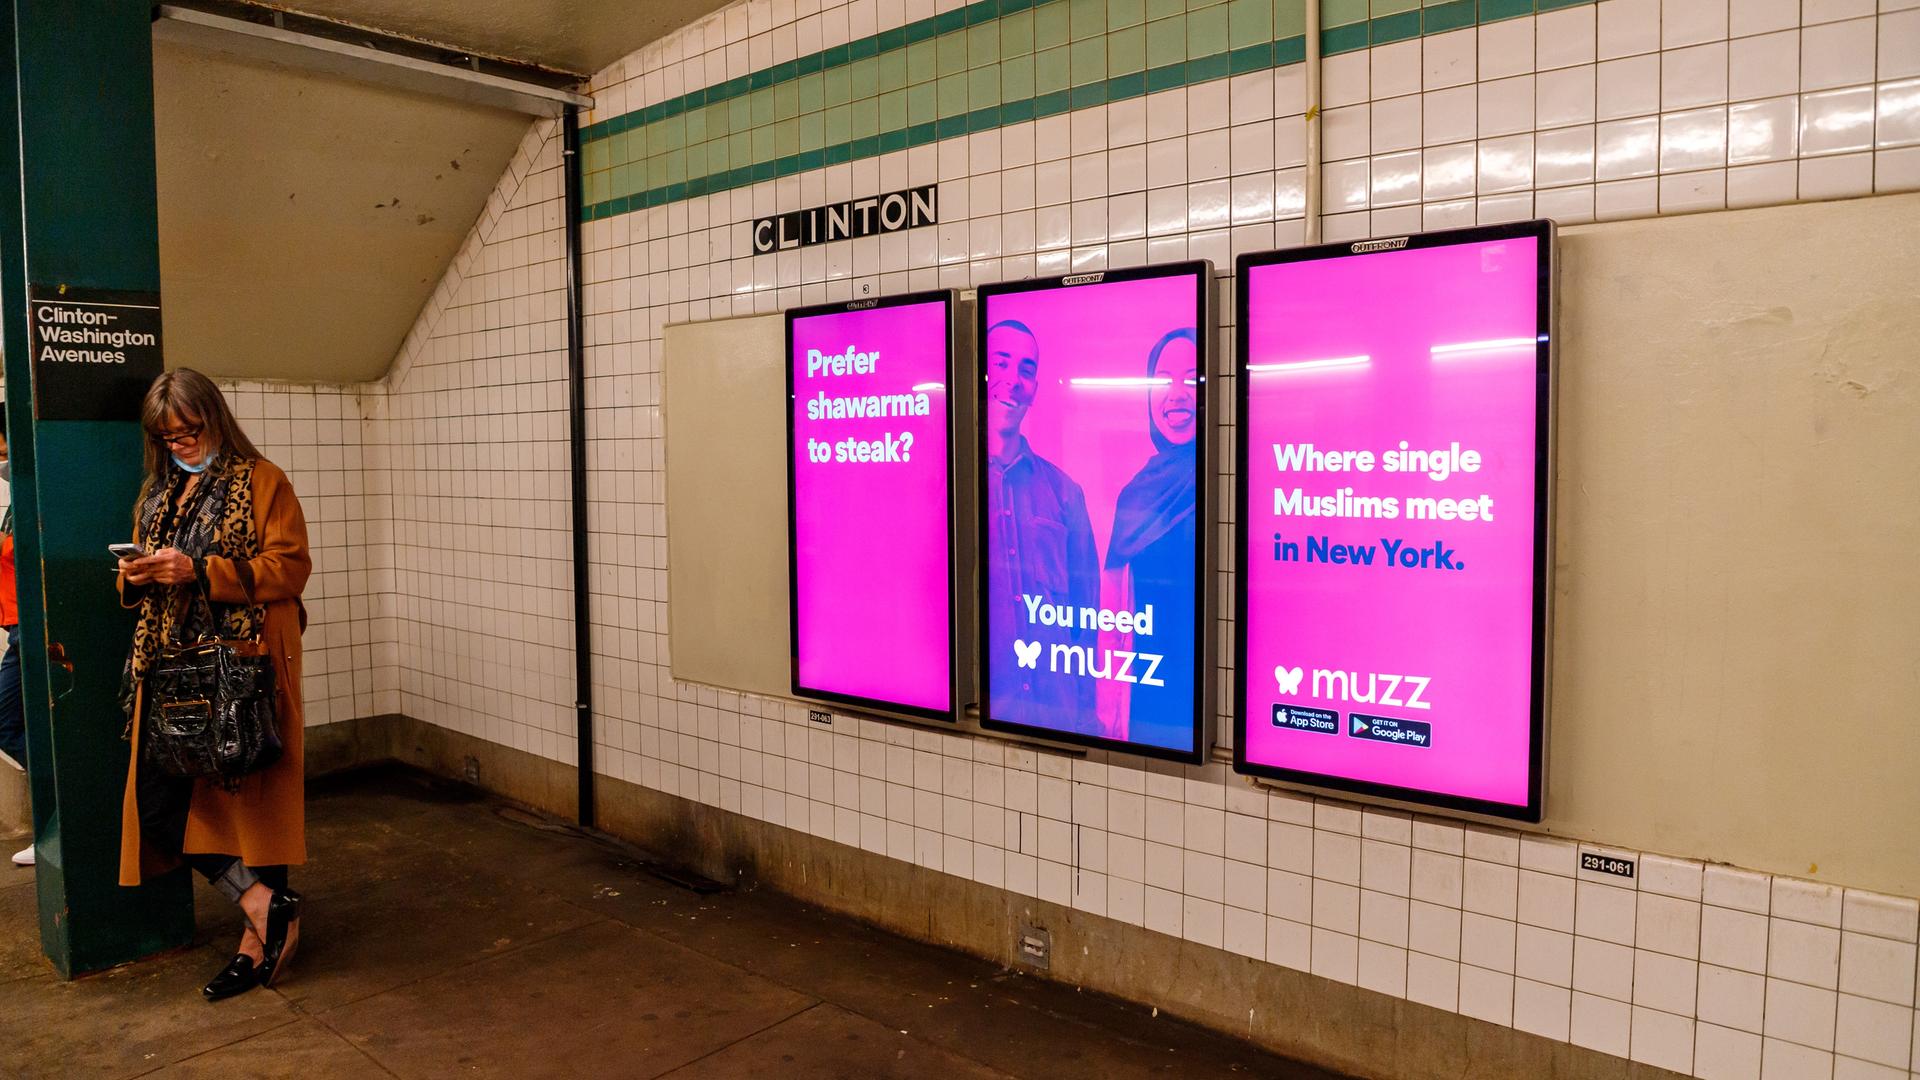 Pinke Plakate mit einem muslimischen Paar und der Aufschrift "Where single Muslims meet in New York" hängen auf einem New Yorker U-Bahnhof.